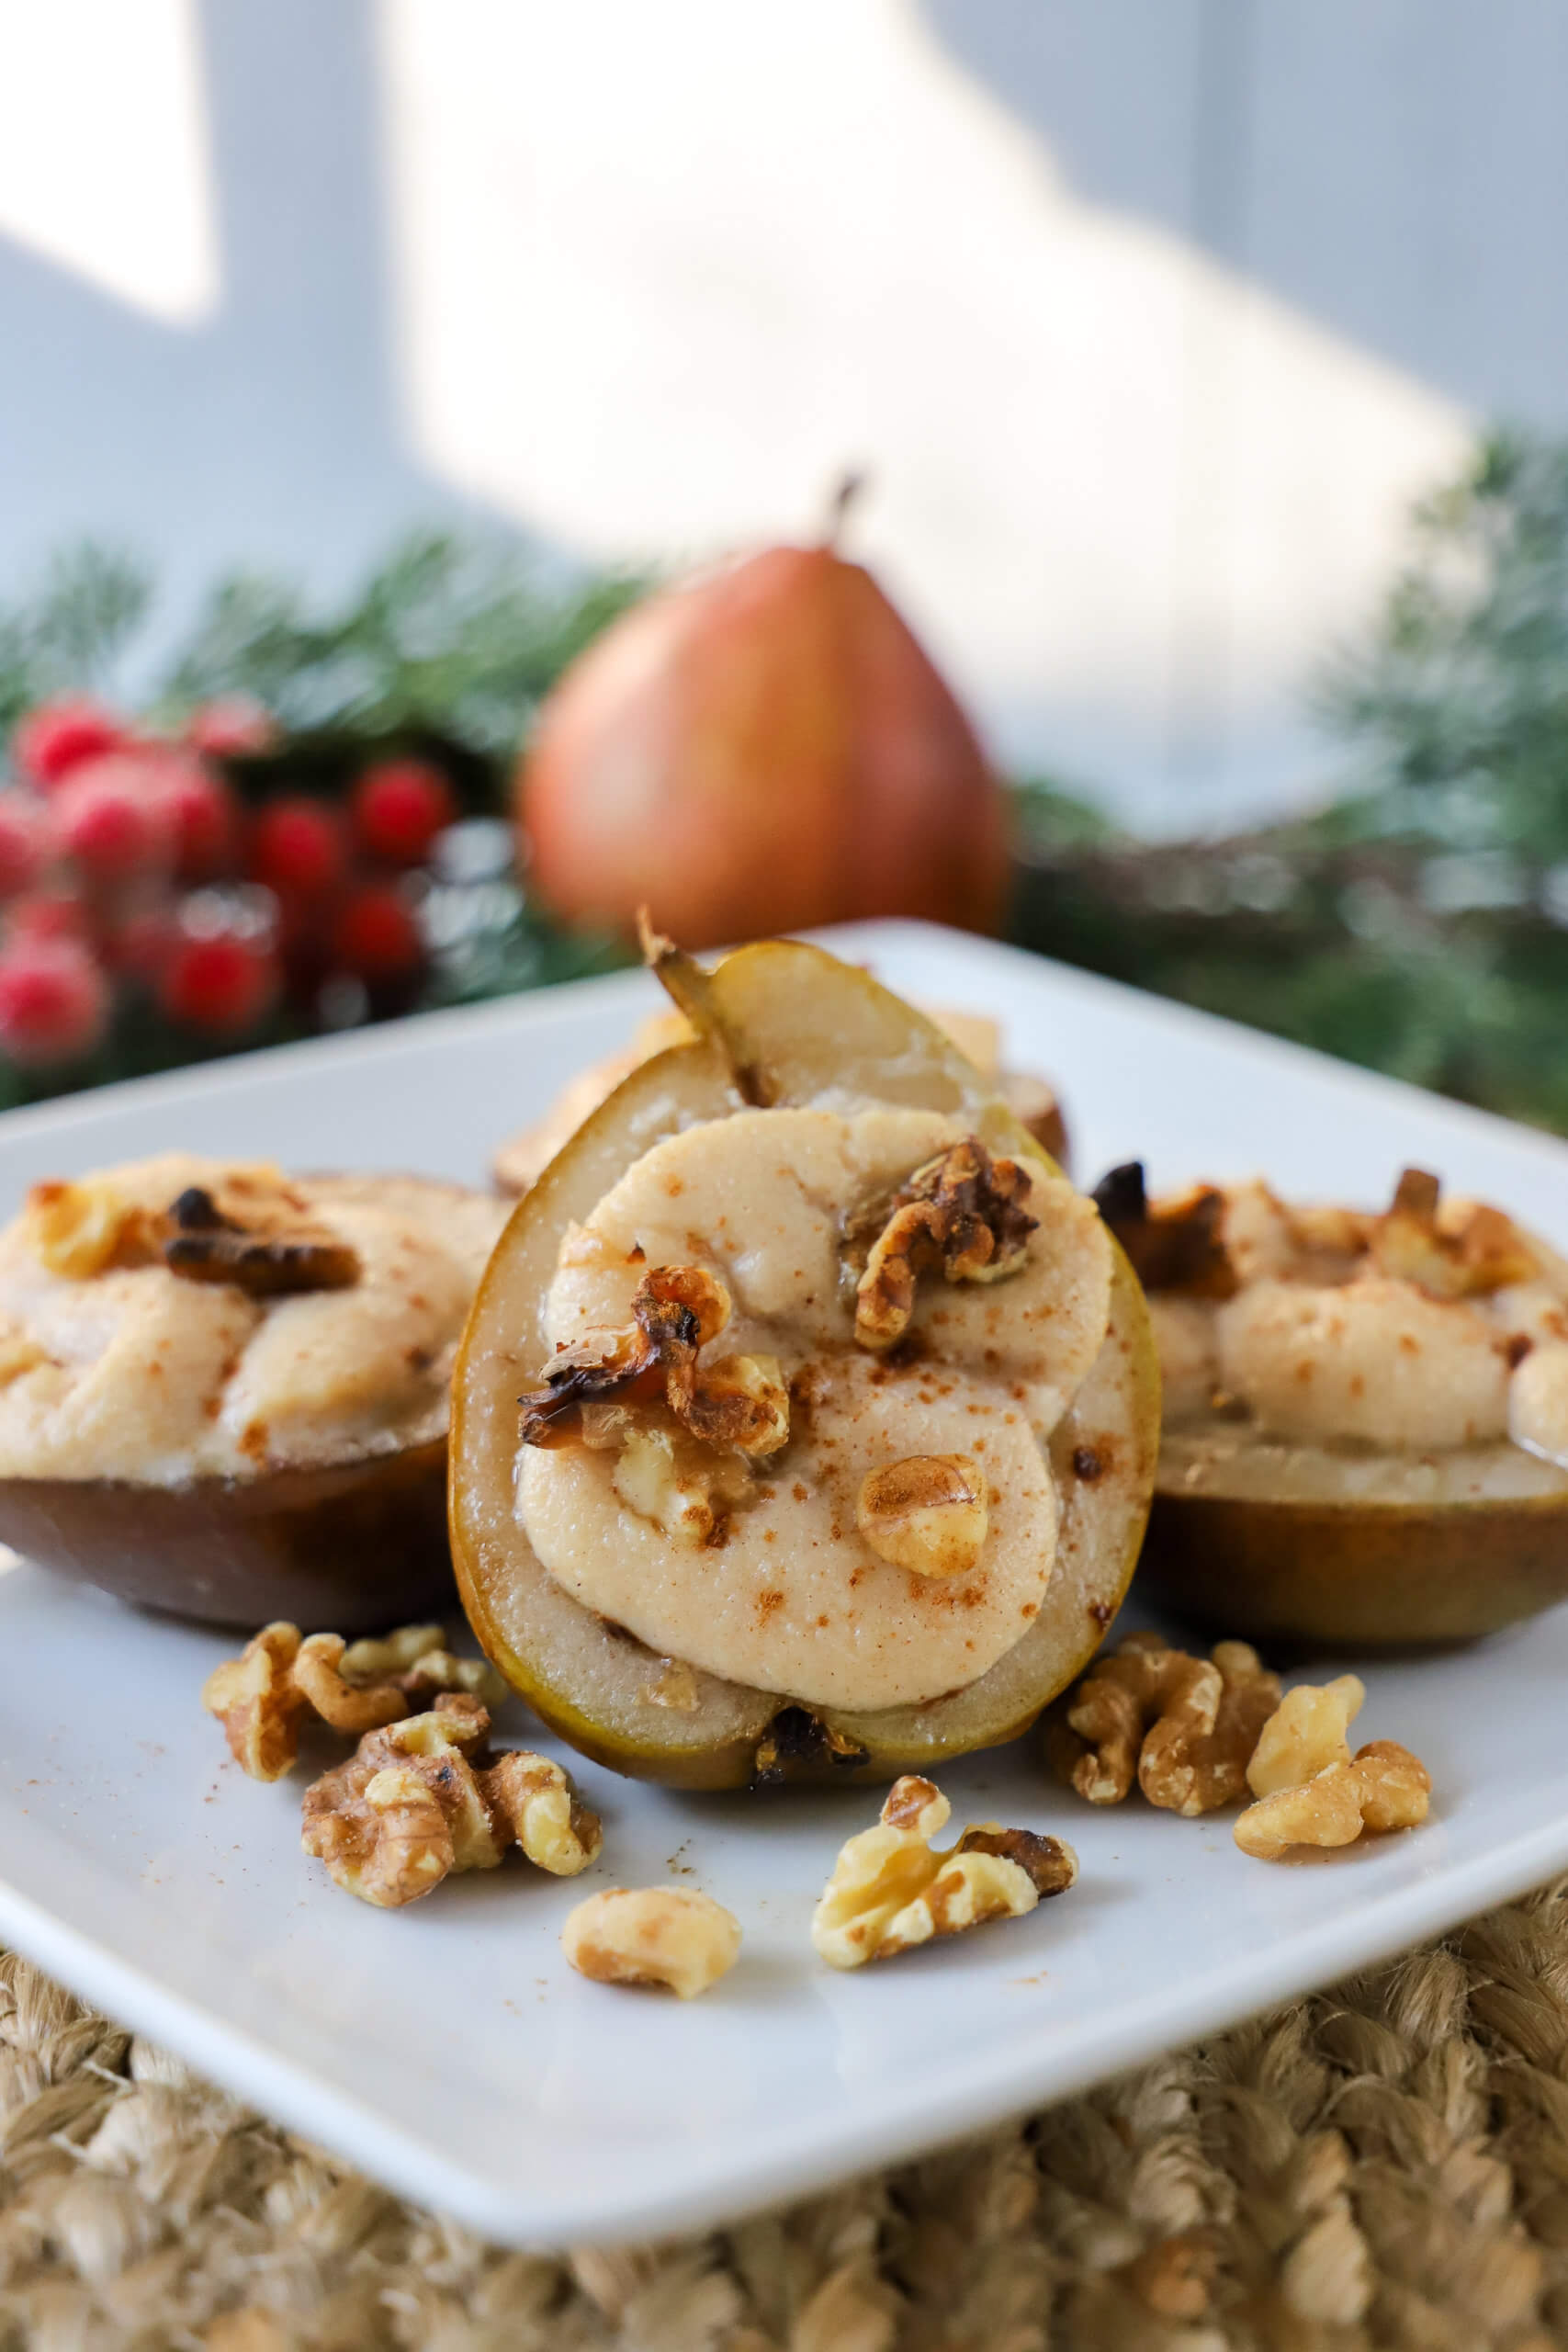  Baked Cinnamon Ricotta Pears